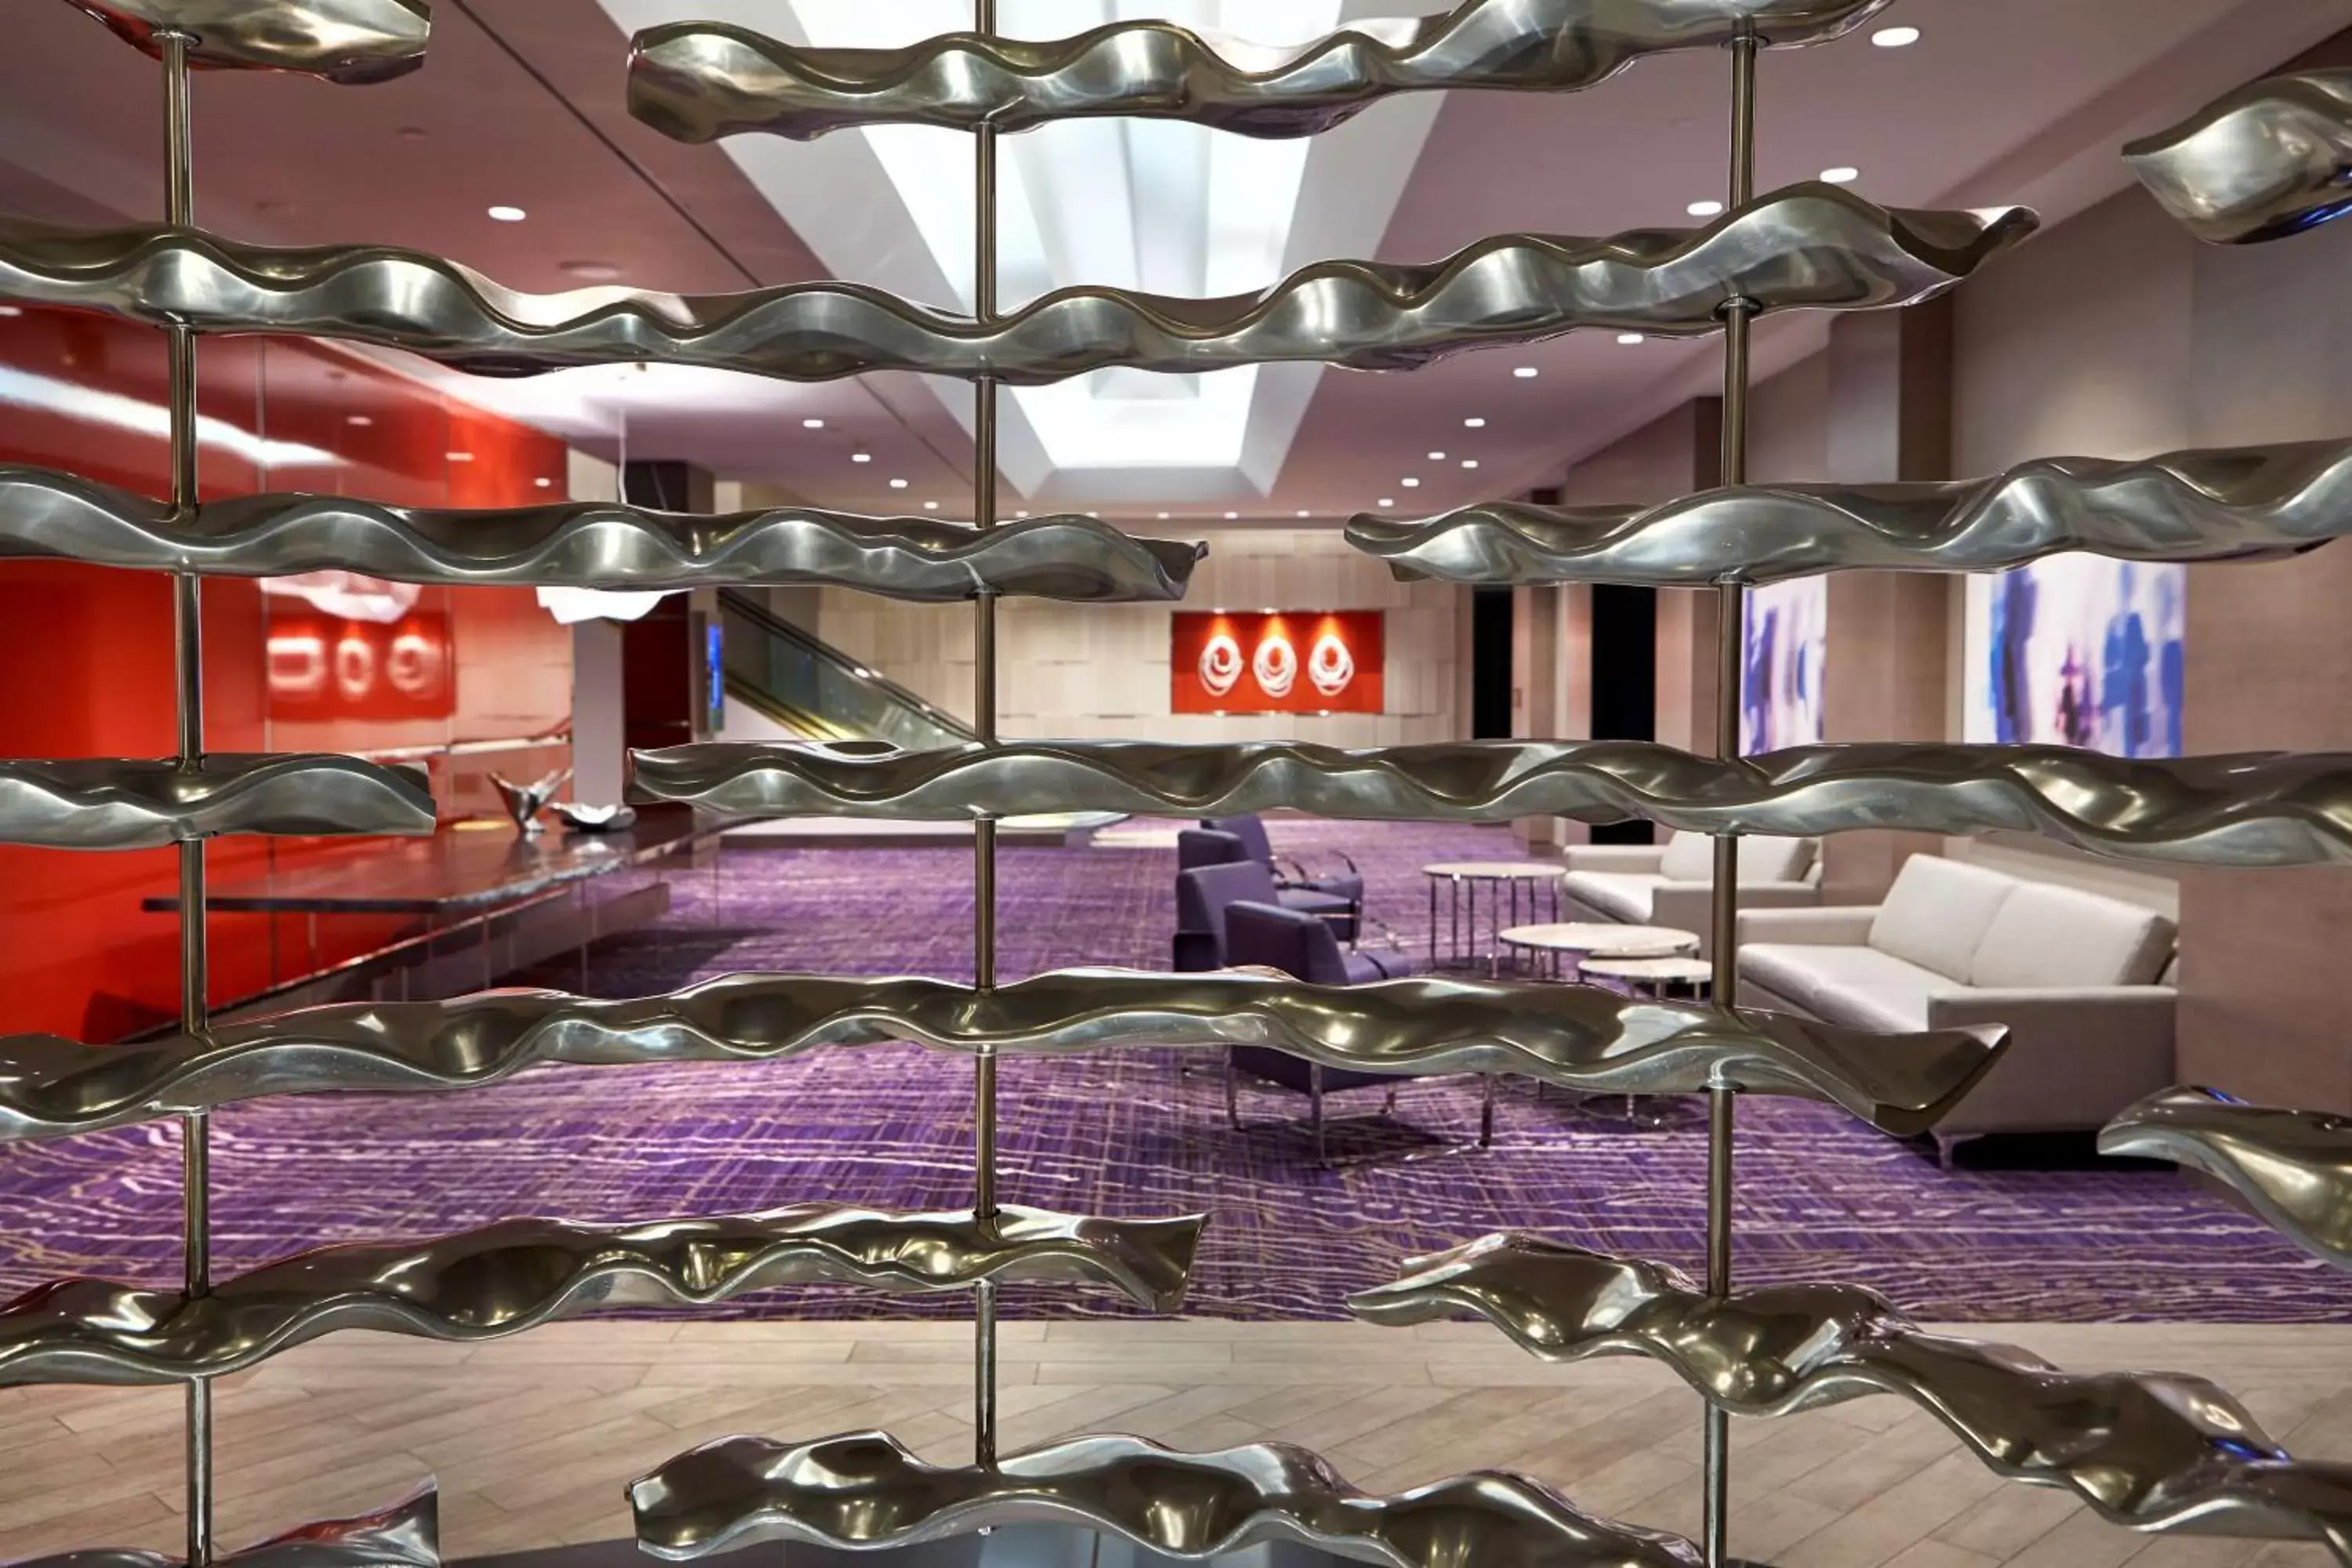 Lobby or reception in Hilton Long Beach Hotel